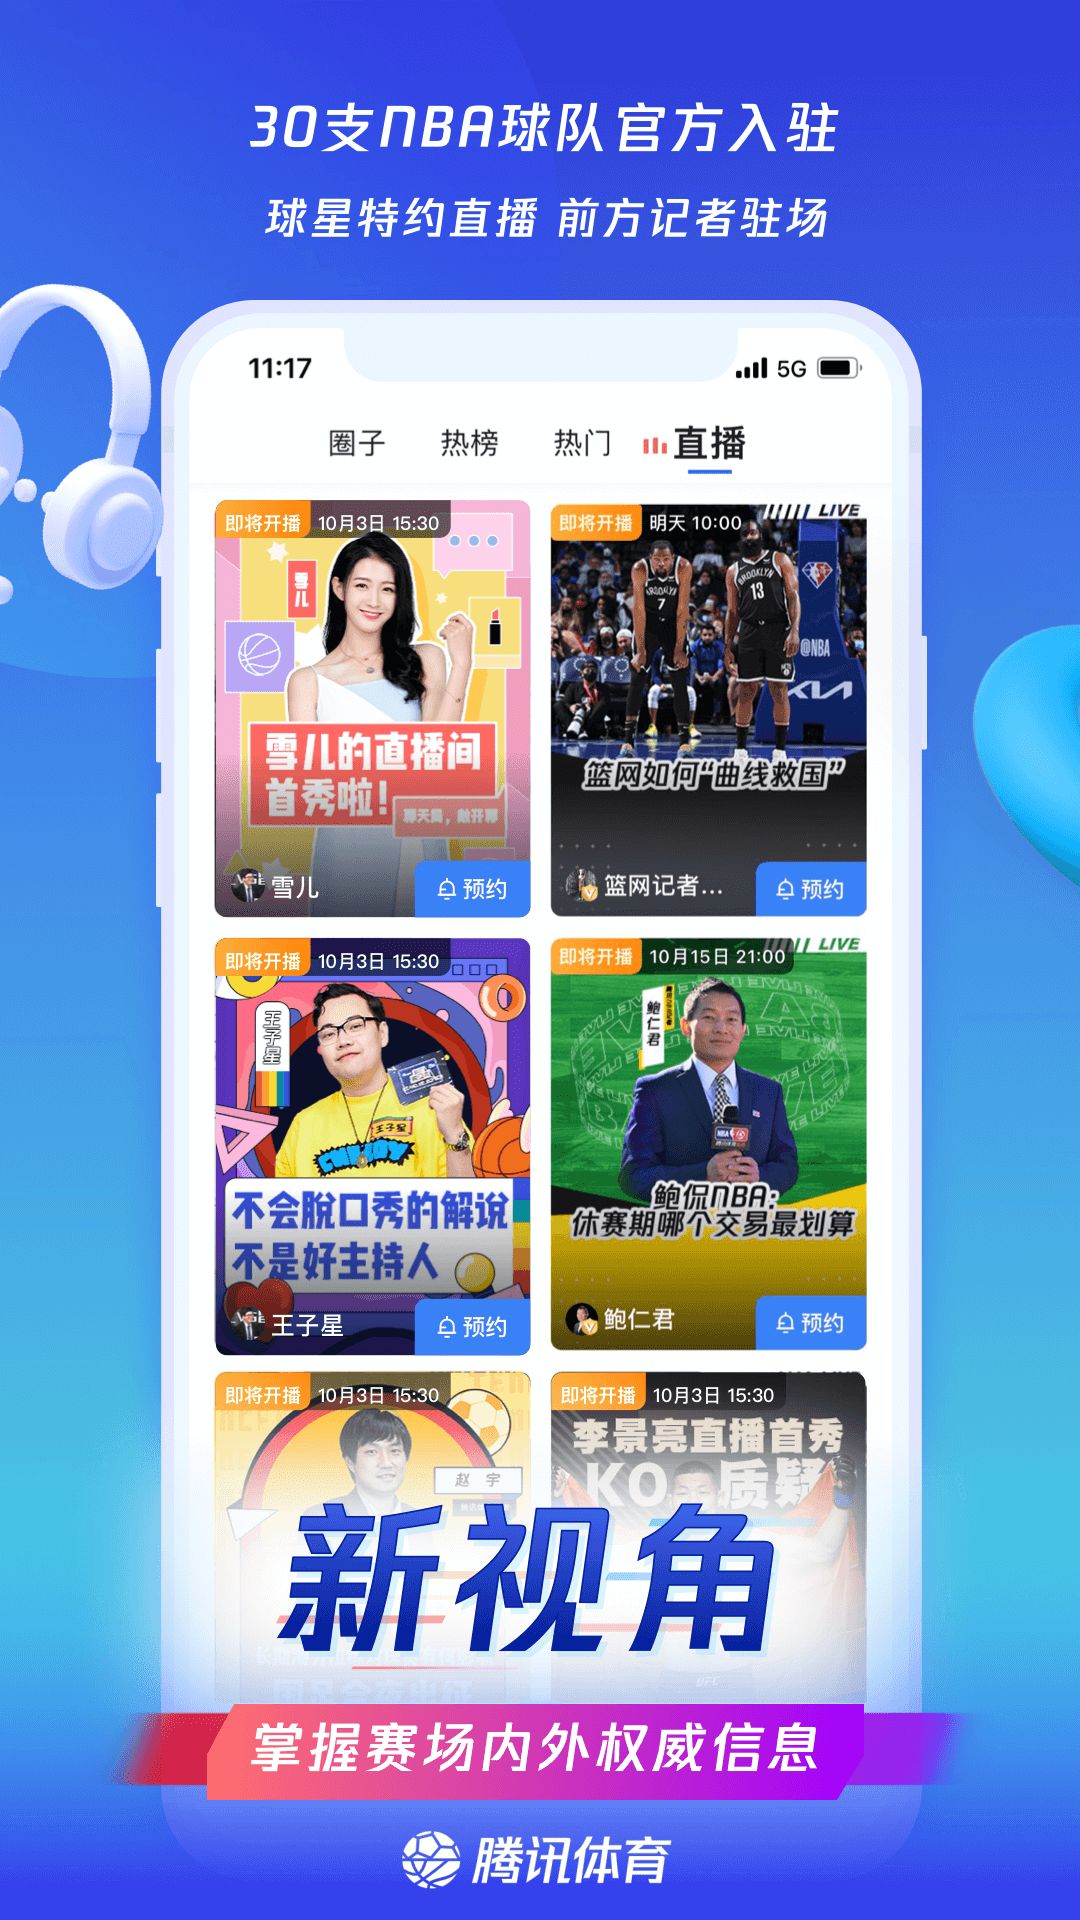 腾讯体育nba新闻网app下载安装图片1